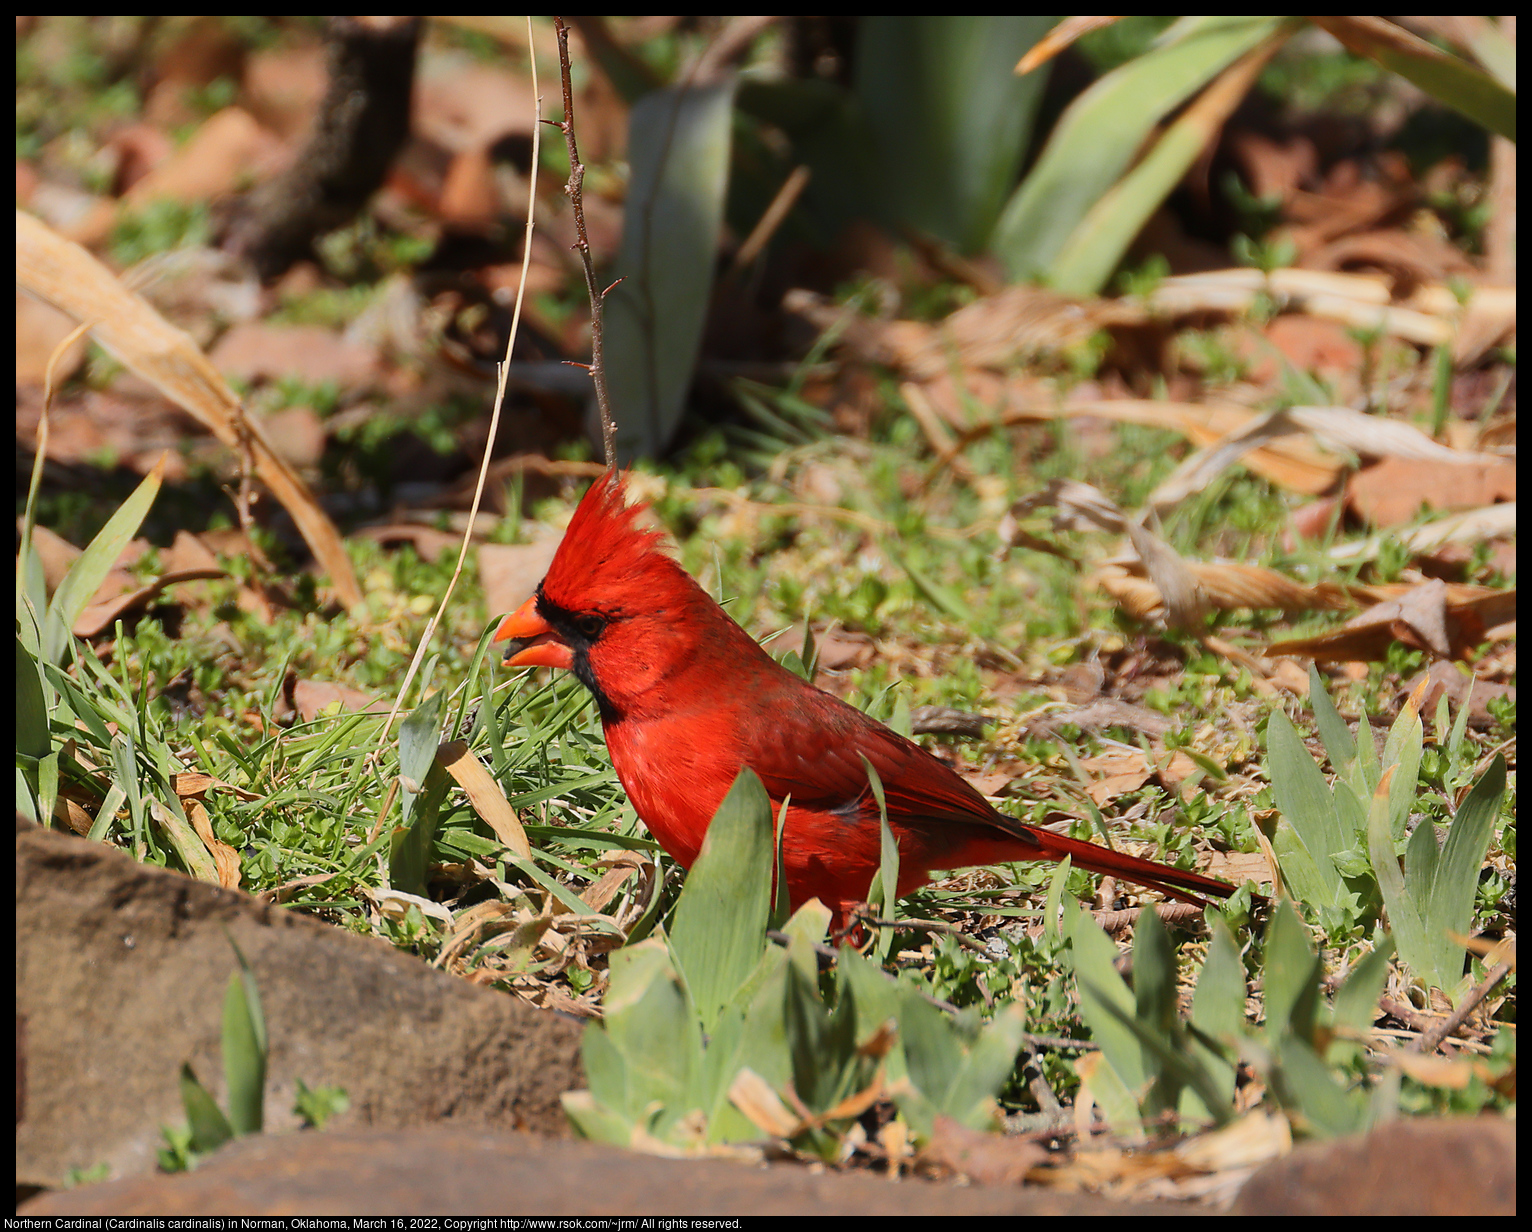 Northern Cardinal (Cardinalis cardinalis) in Norman, Oklahoma, March 16, 2022